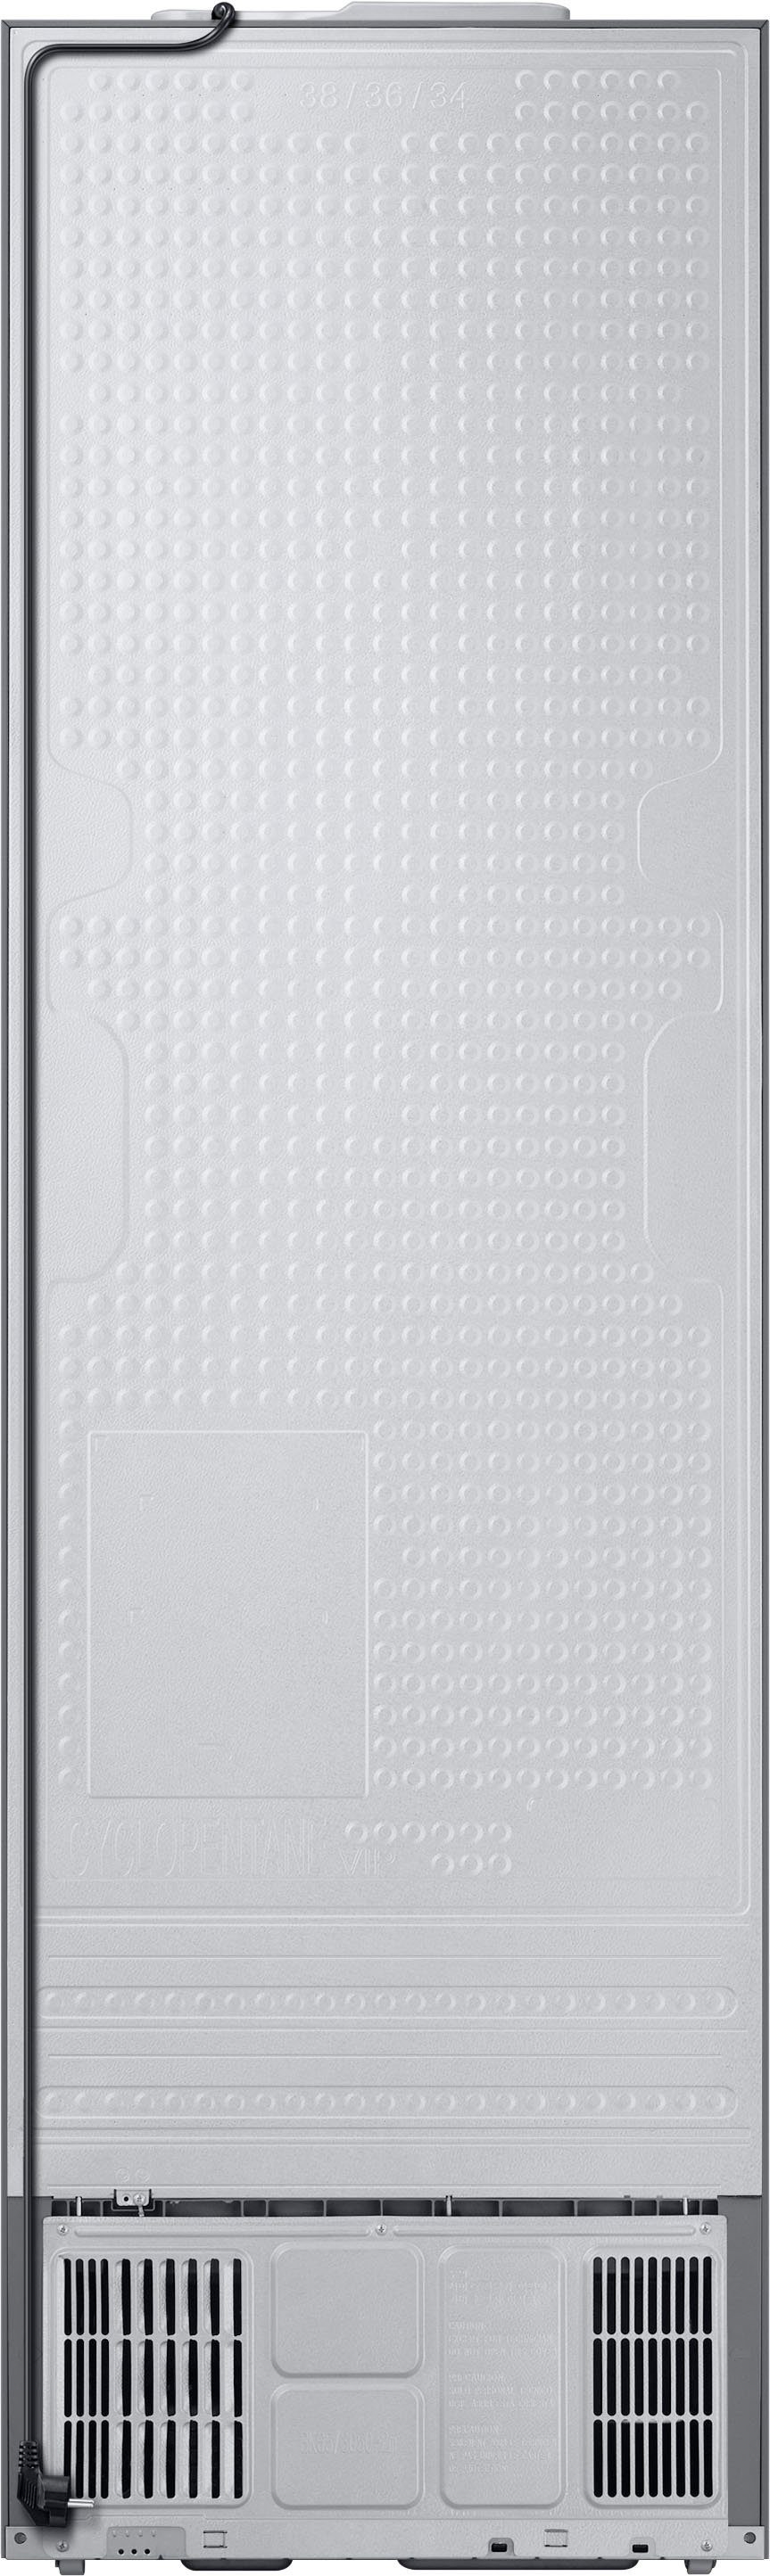 Samsung Kühl-/Gefrierkombination Bespoke RL38A7B5BS9, hoch, 59,5 cm 203 cm breit